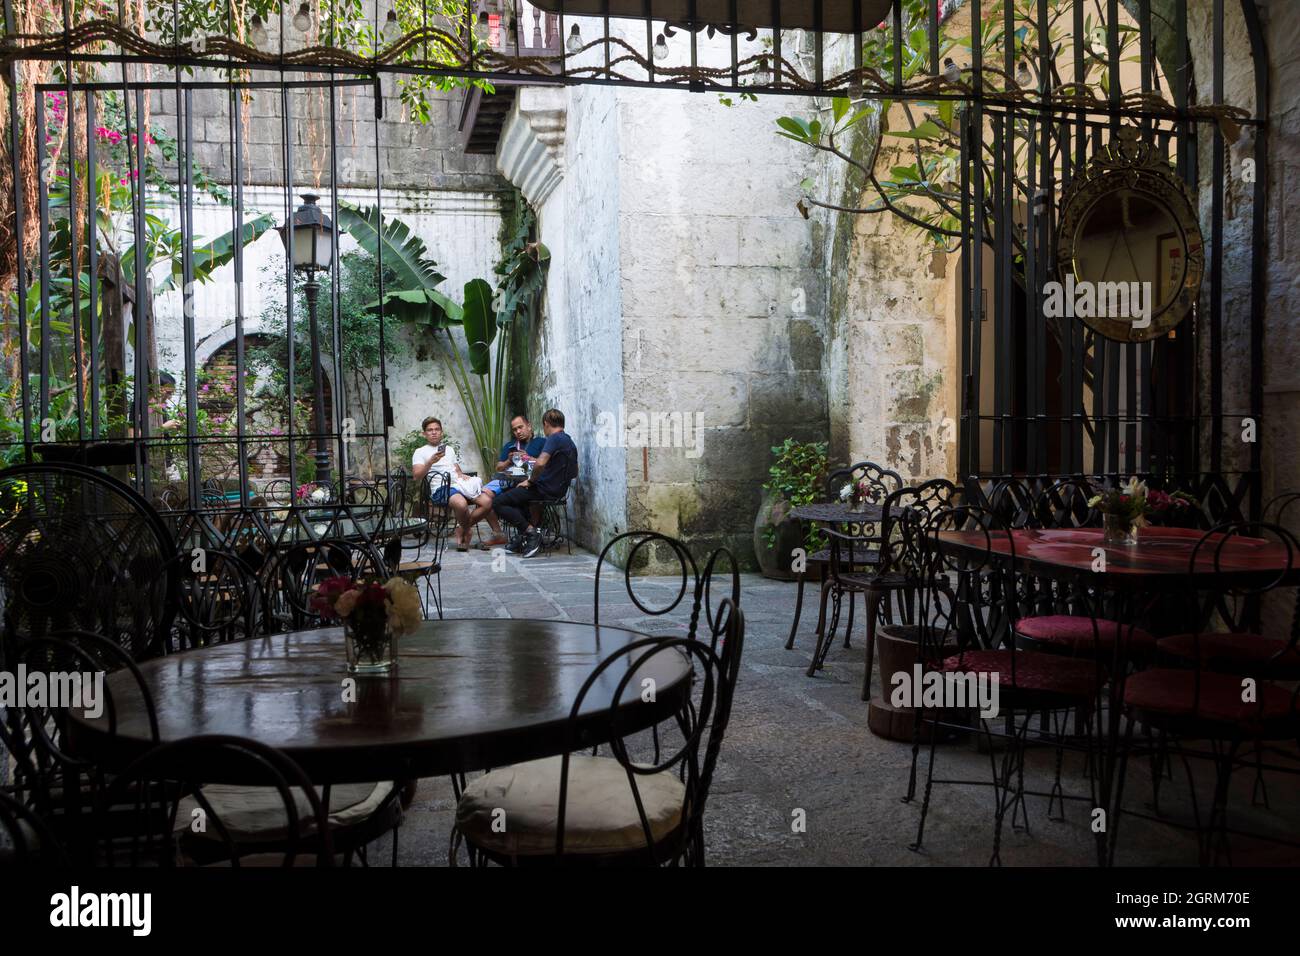 Trois hommes assis à une table dans le patio d'une maison de café à Intramuros, la zone historique fortifiée dans la ville de Manille, Philippines Banque D'Images